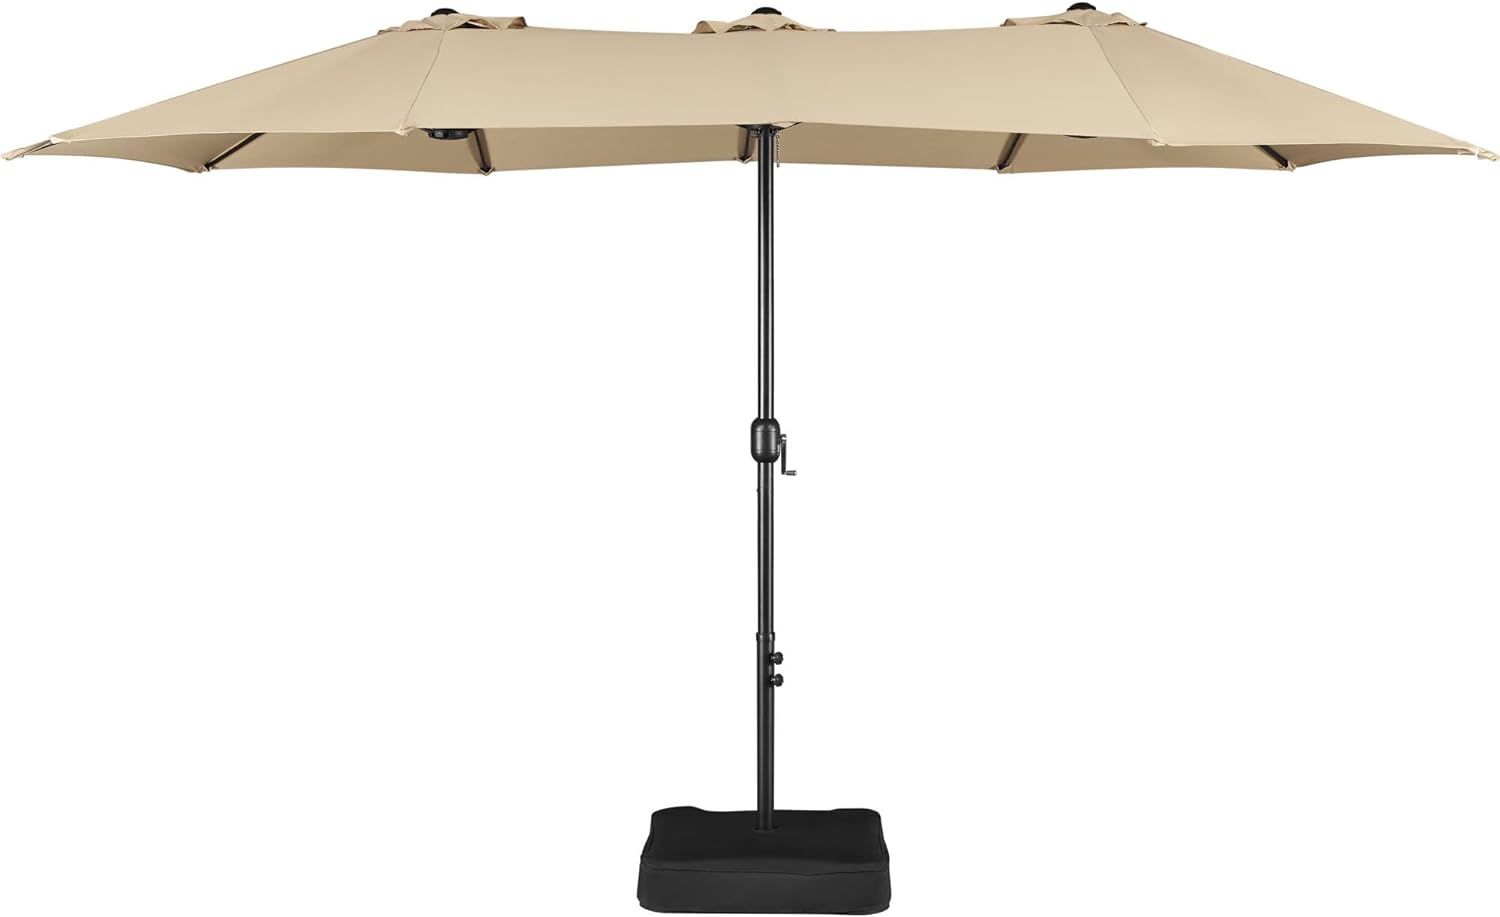 Yaheetech 15 ft Triple-size Patio Umbrella w/Base Included - Market Extra-Large Double Sided Umbr... | Amazon (US)